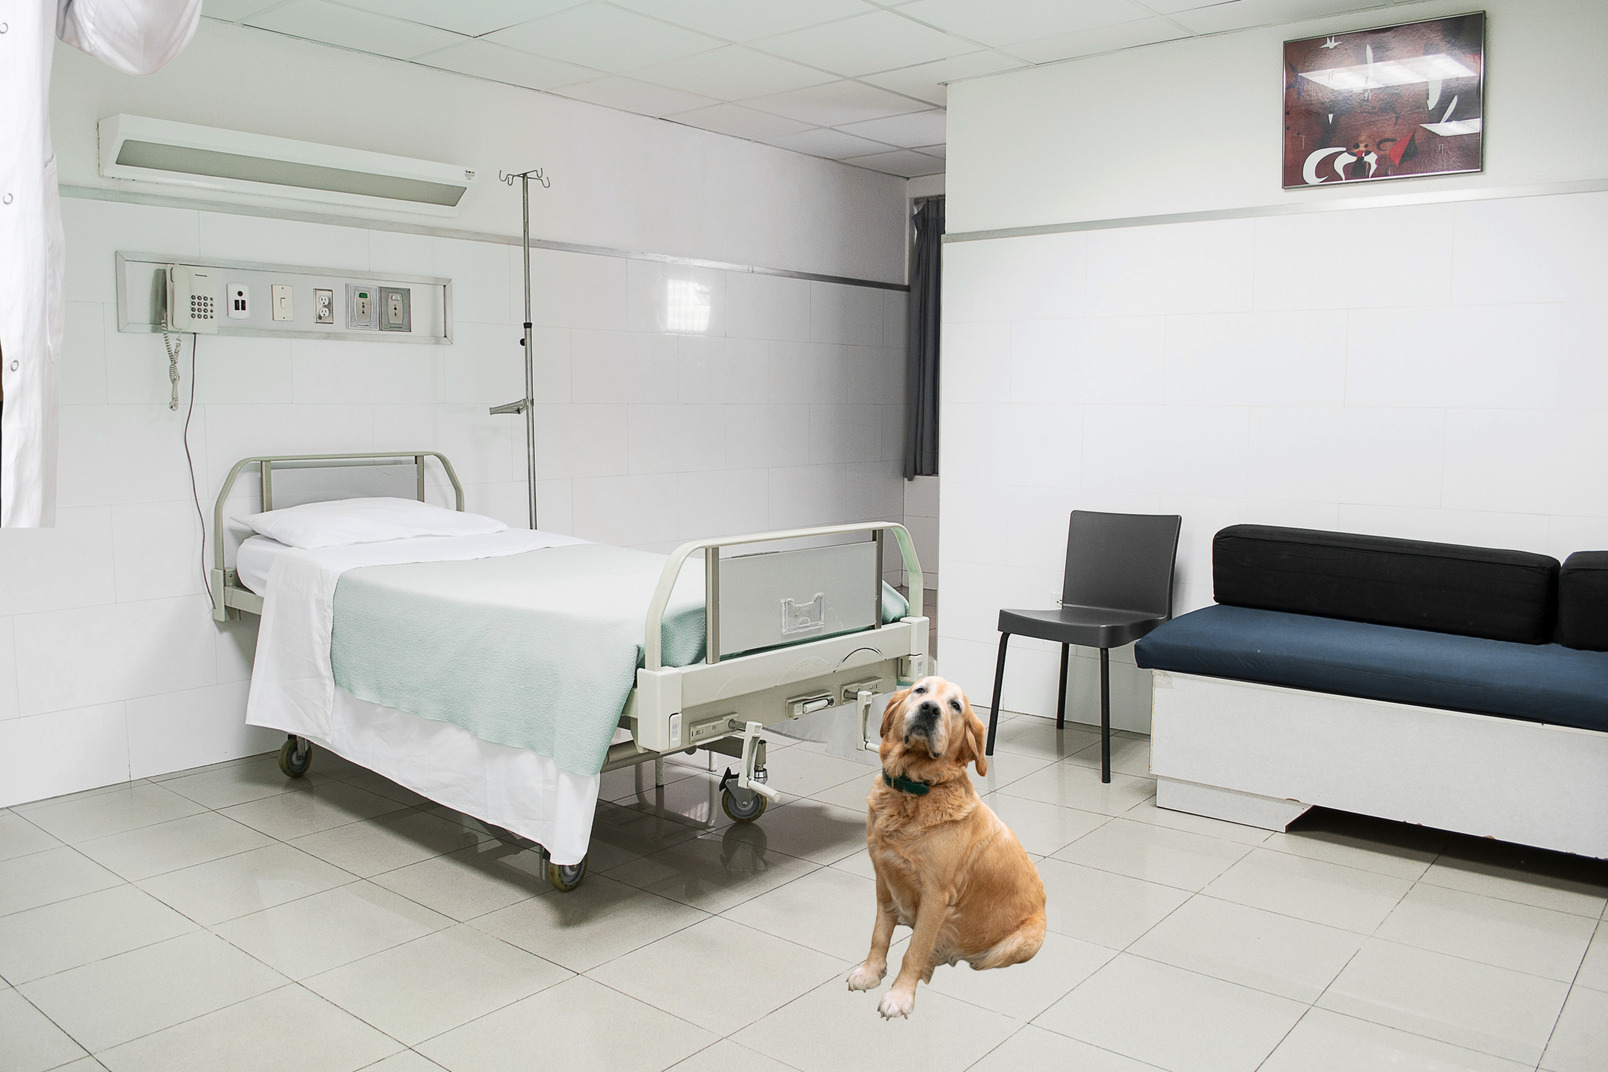 Dog in a modern hospital